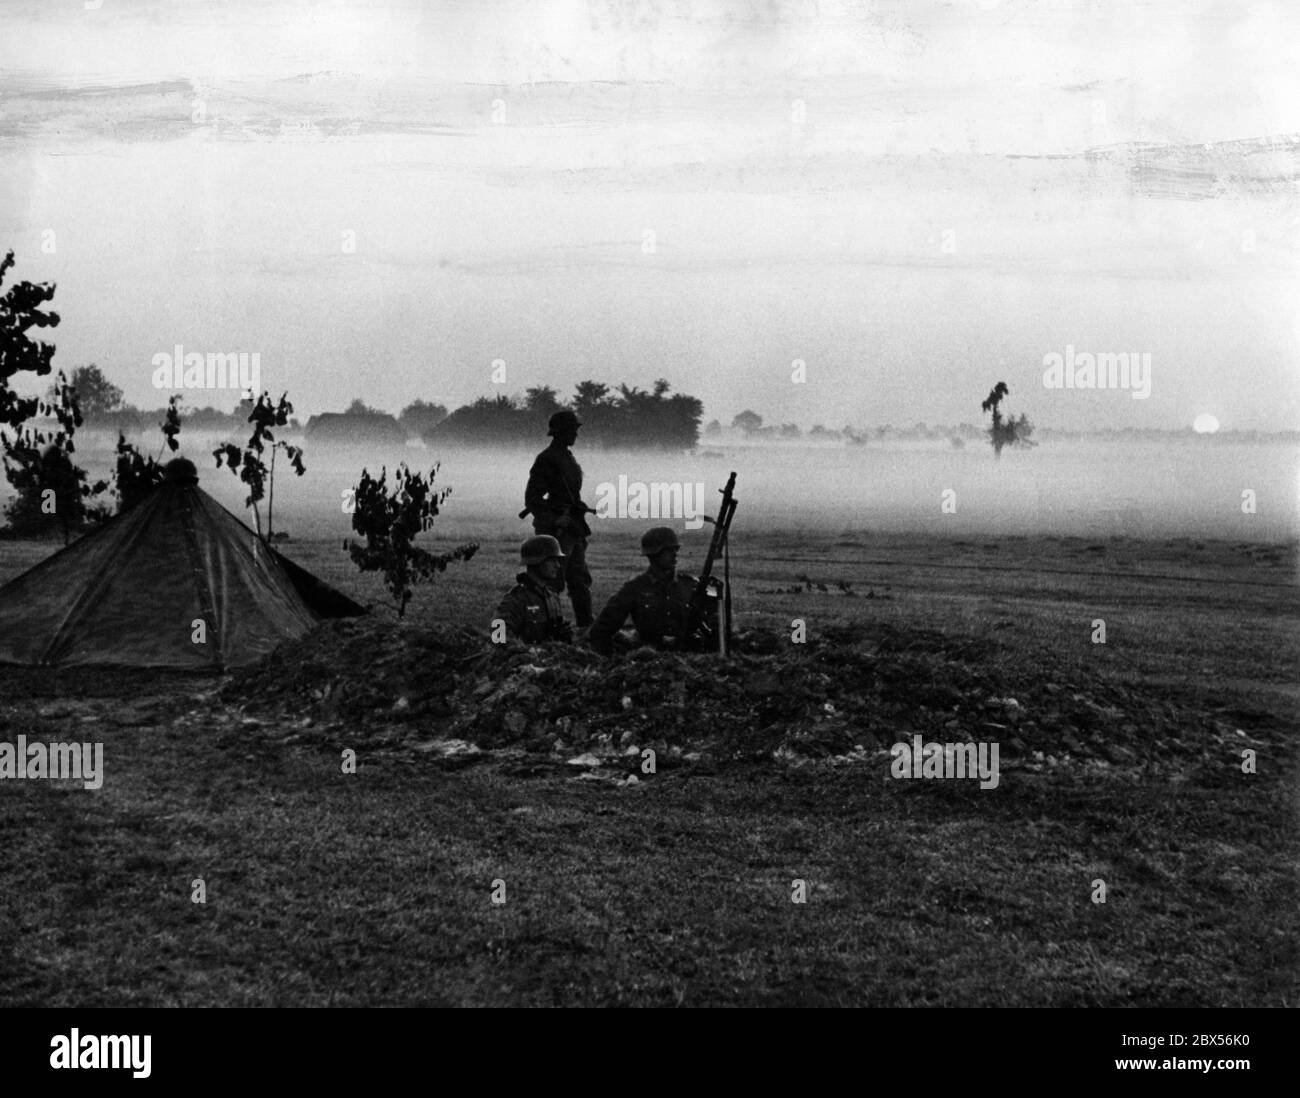 Un gruppo di fantini tedeschi nella nebbia mattutina del 22.06.1941. Al centro della foto c'è un mg-34 per la difesa aerea su treppiede. Foto Stock